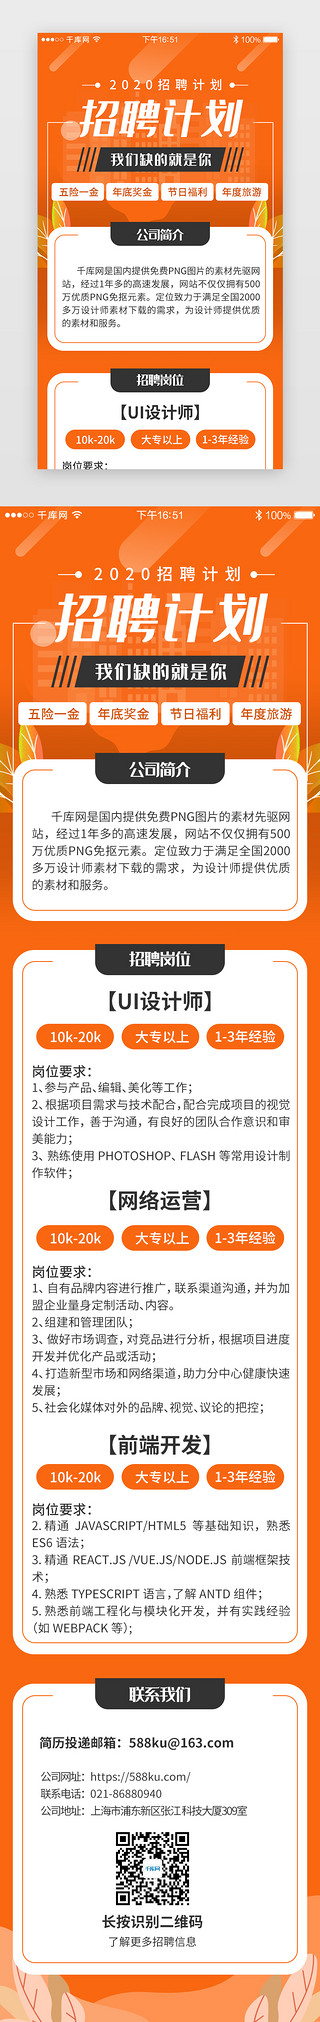 媒体运营求职简历UI设计素材_橙色系app招聘求职H5